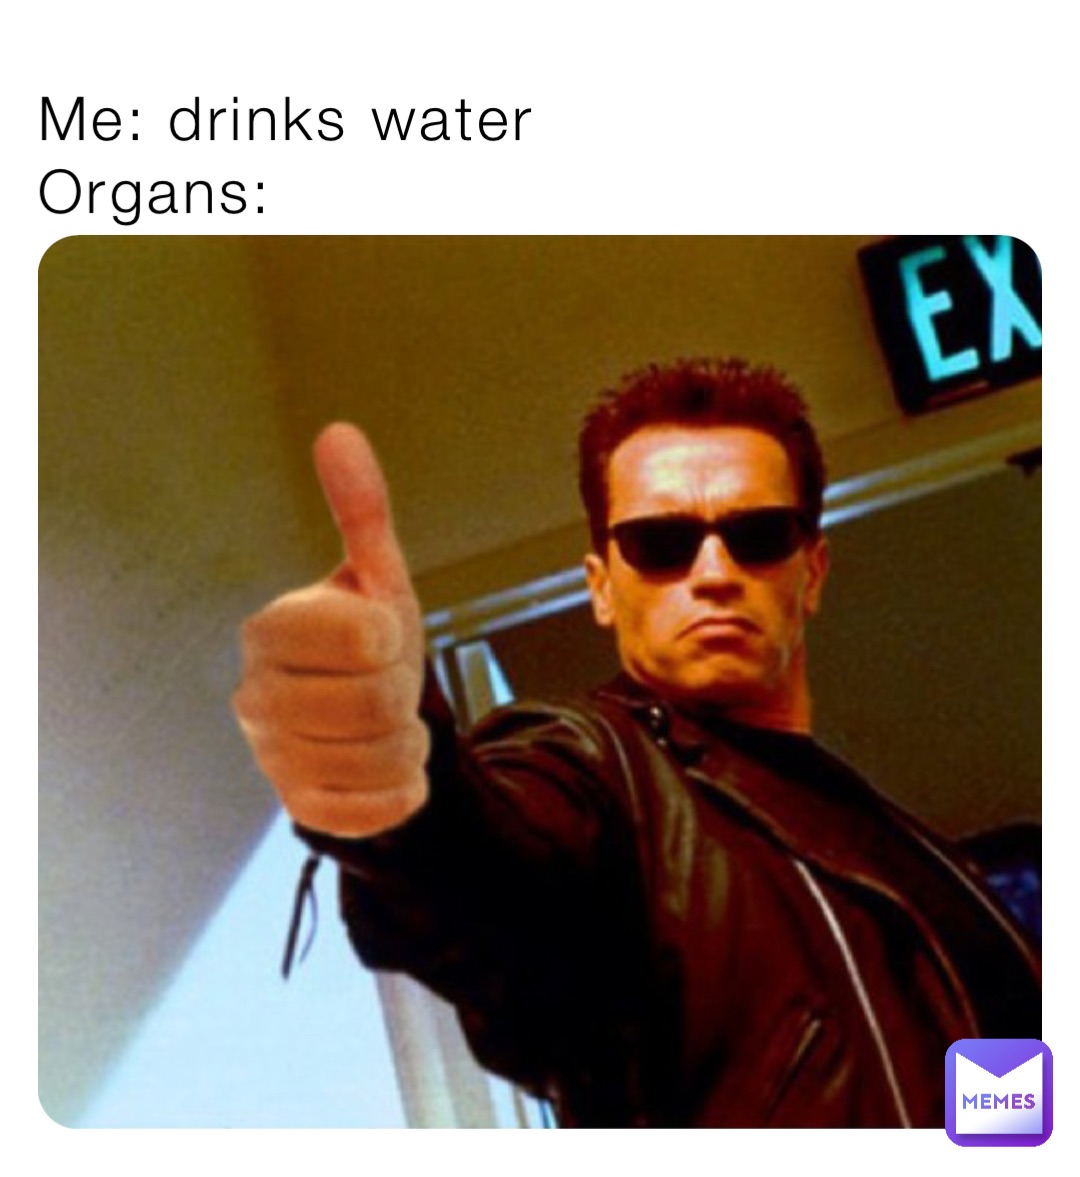 Me: drinks water 
Organs: